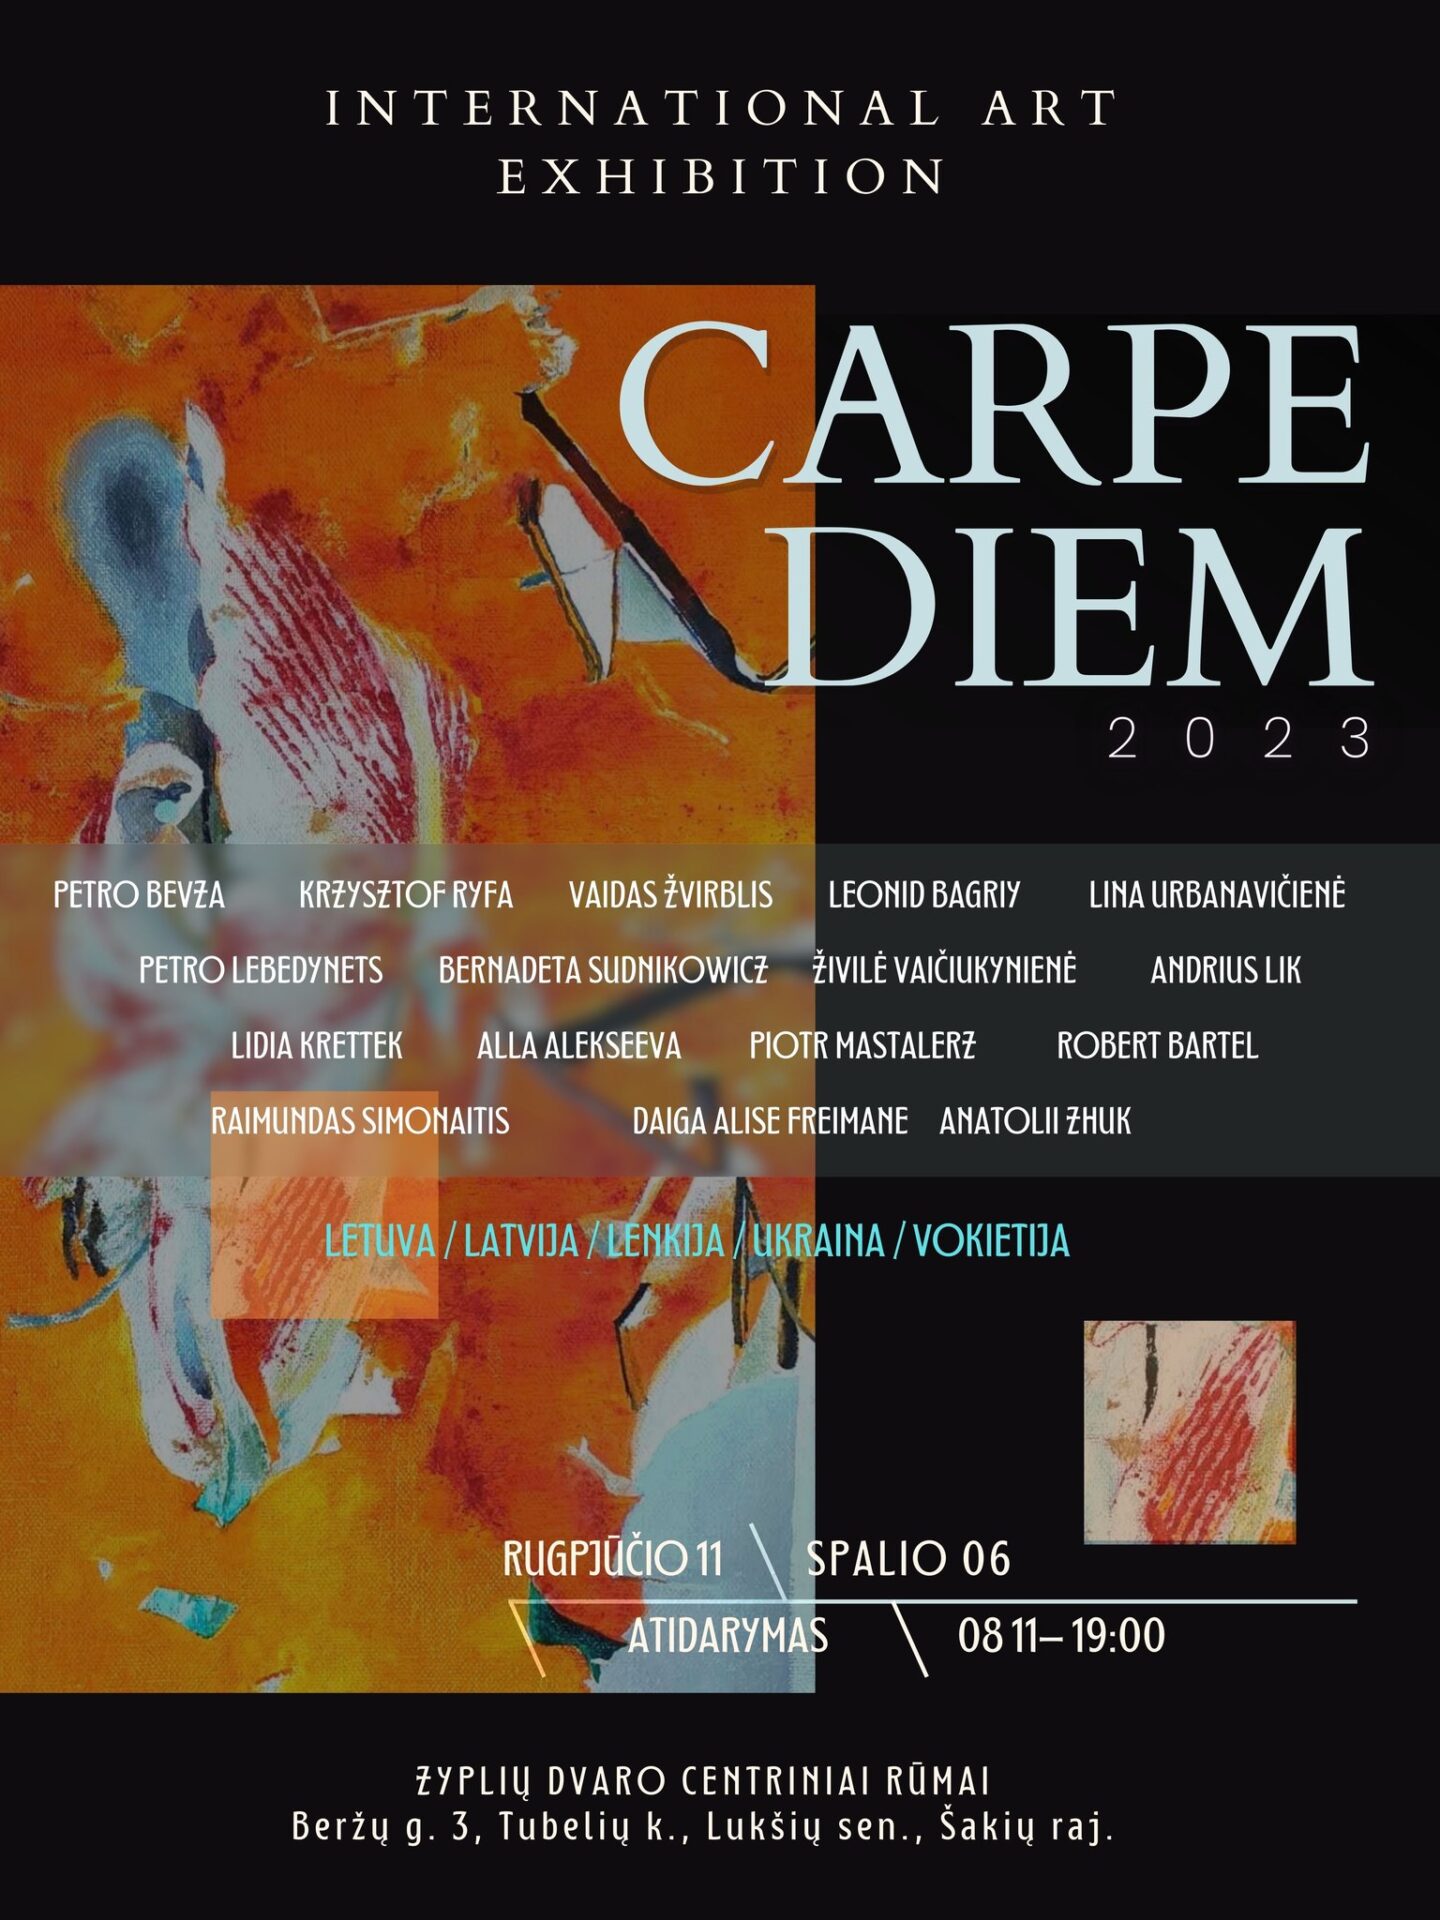 CARPE DIEM international art exhibition